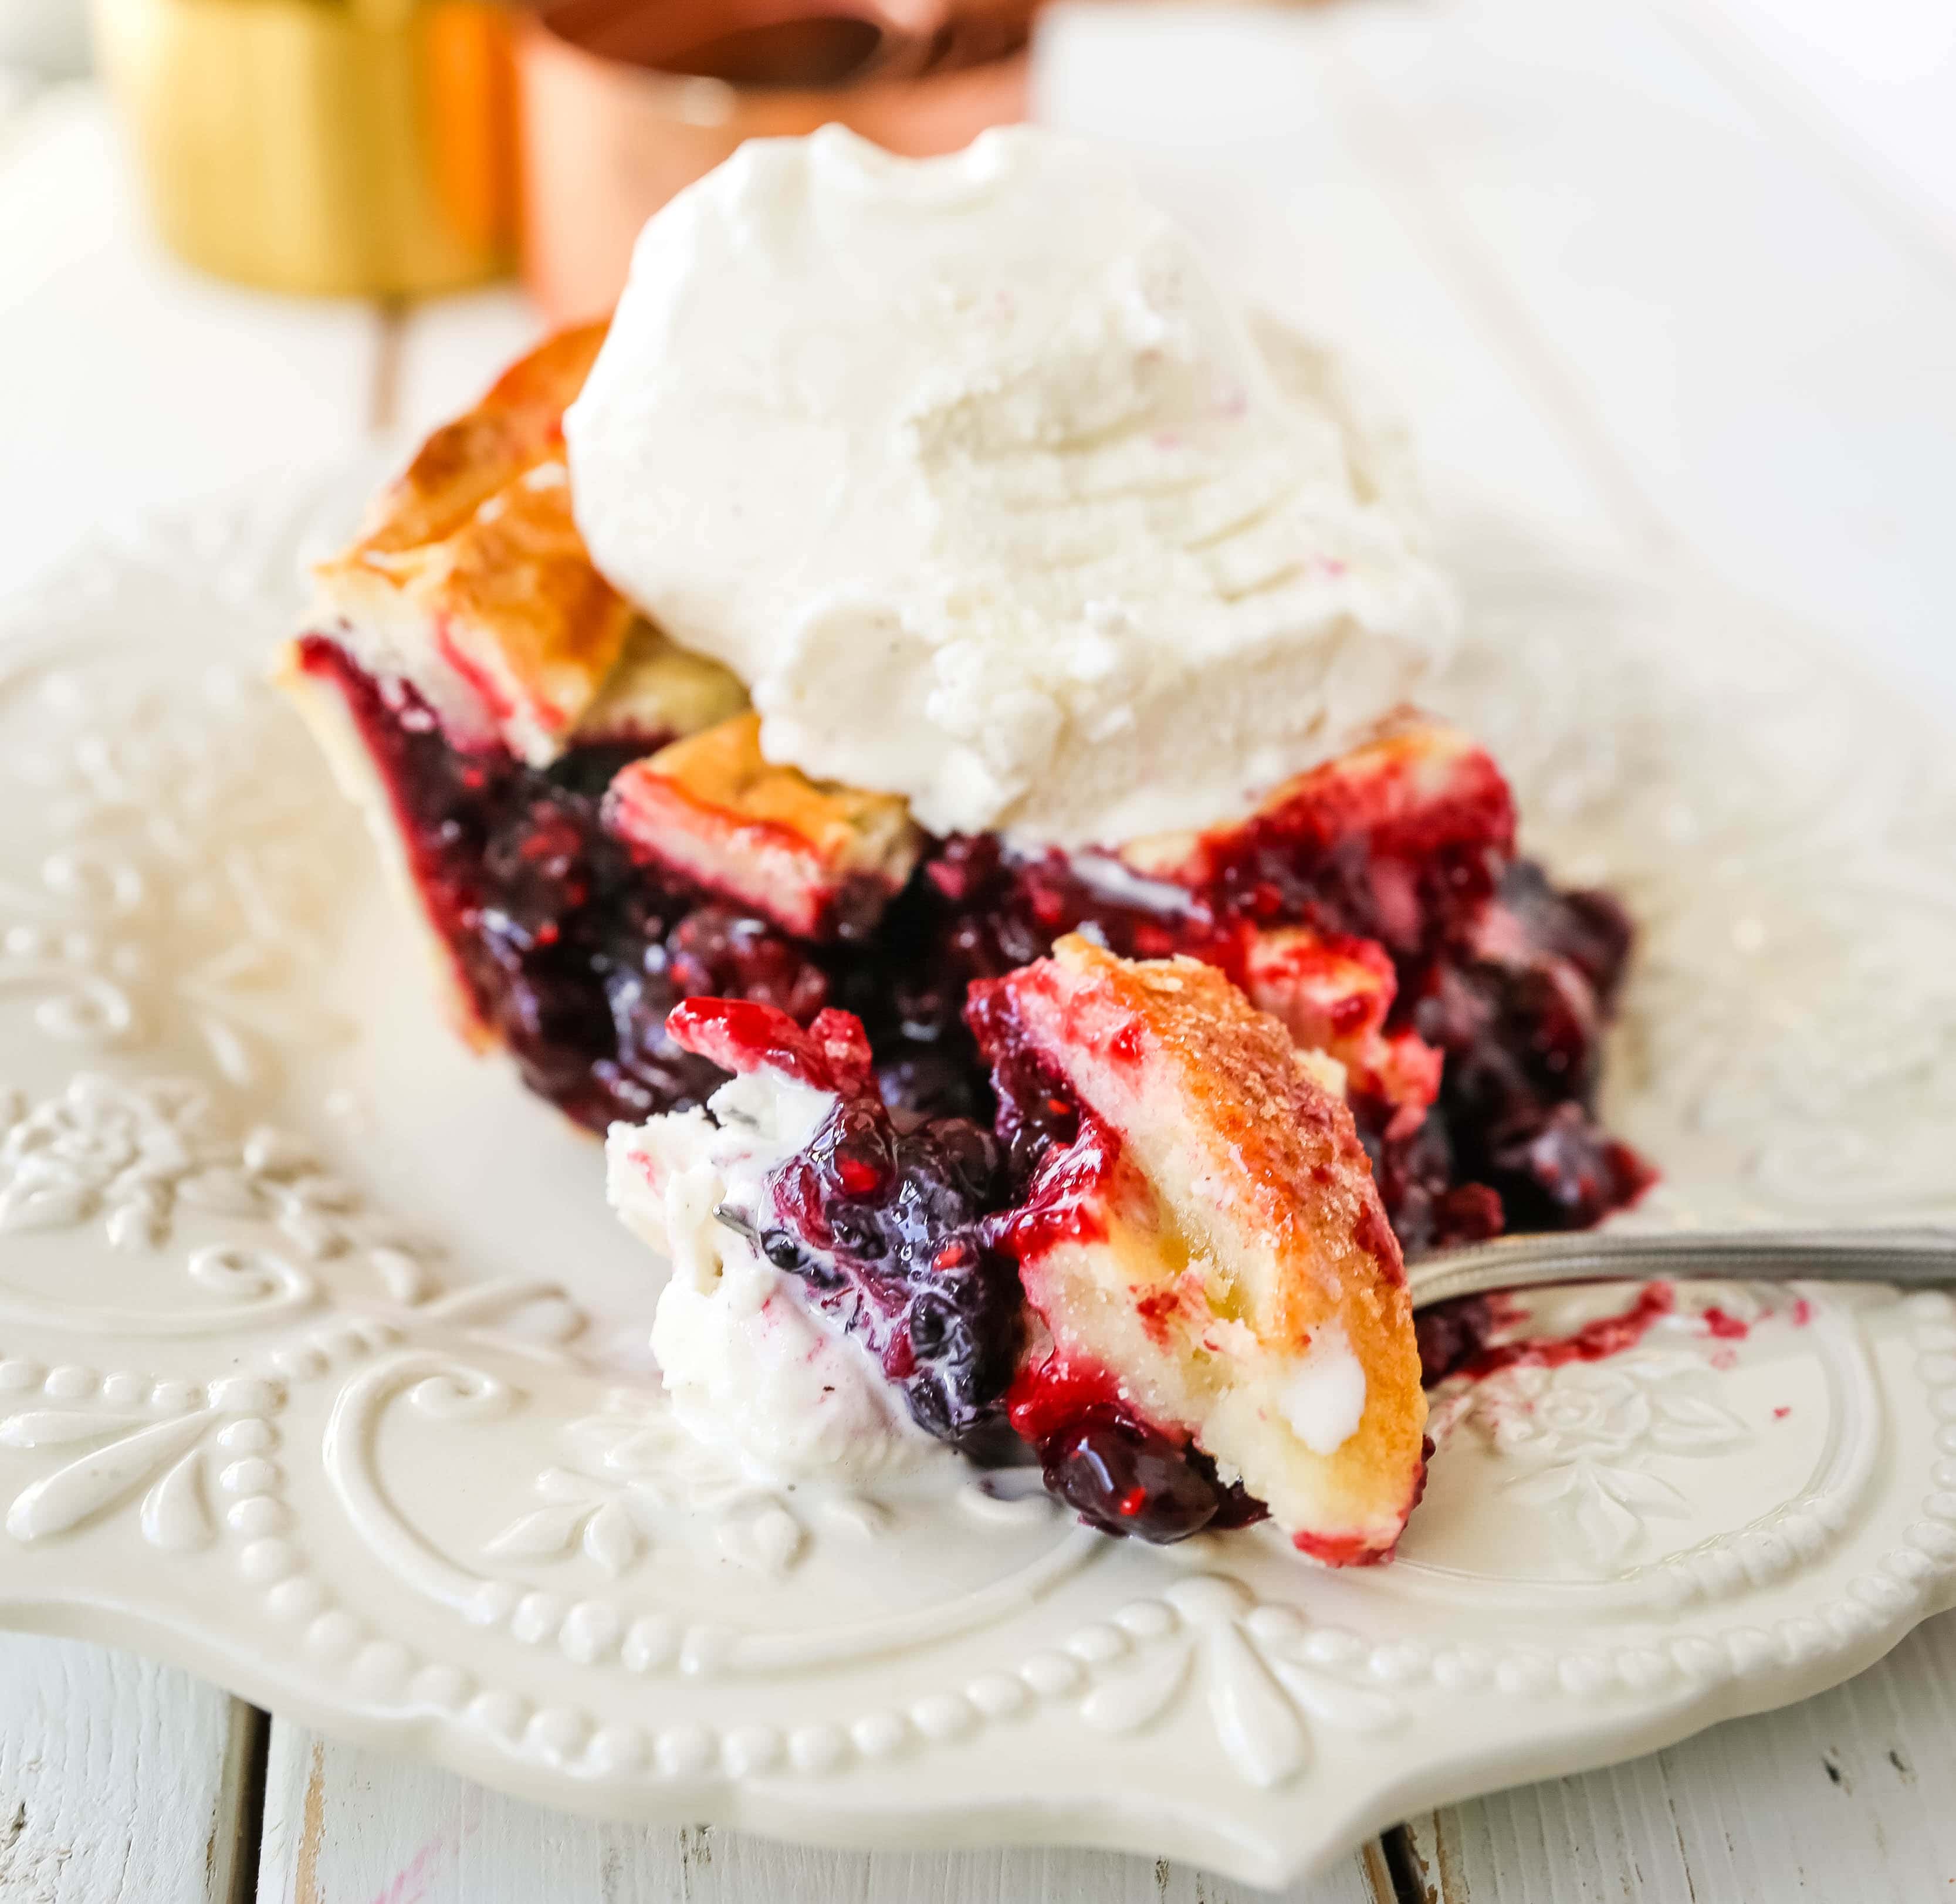 トリプル・ベリー・パイ。 バター風味のパイ生地を使った最高の自家製ベリーパイのレシピです。 バニラビーンズのアイスクリームをのせれば、完璧なベリーのデザートの完成です www.modernhoney.com #berrypie #pie #berries #tripleberrypie #thanksgiving